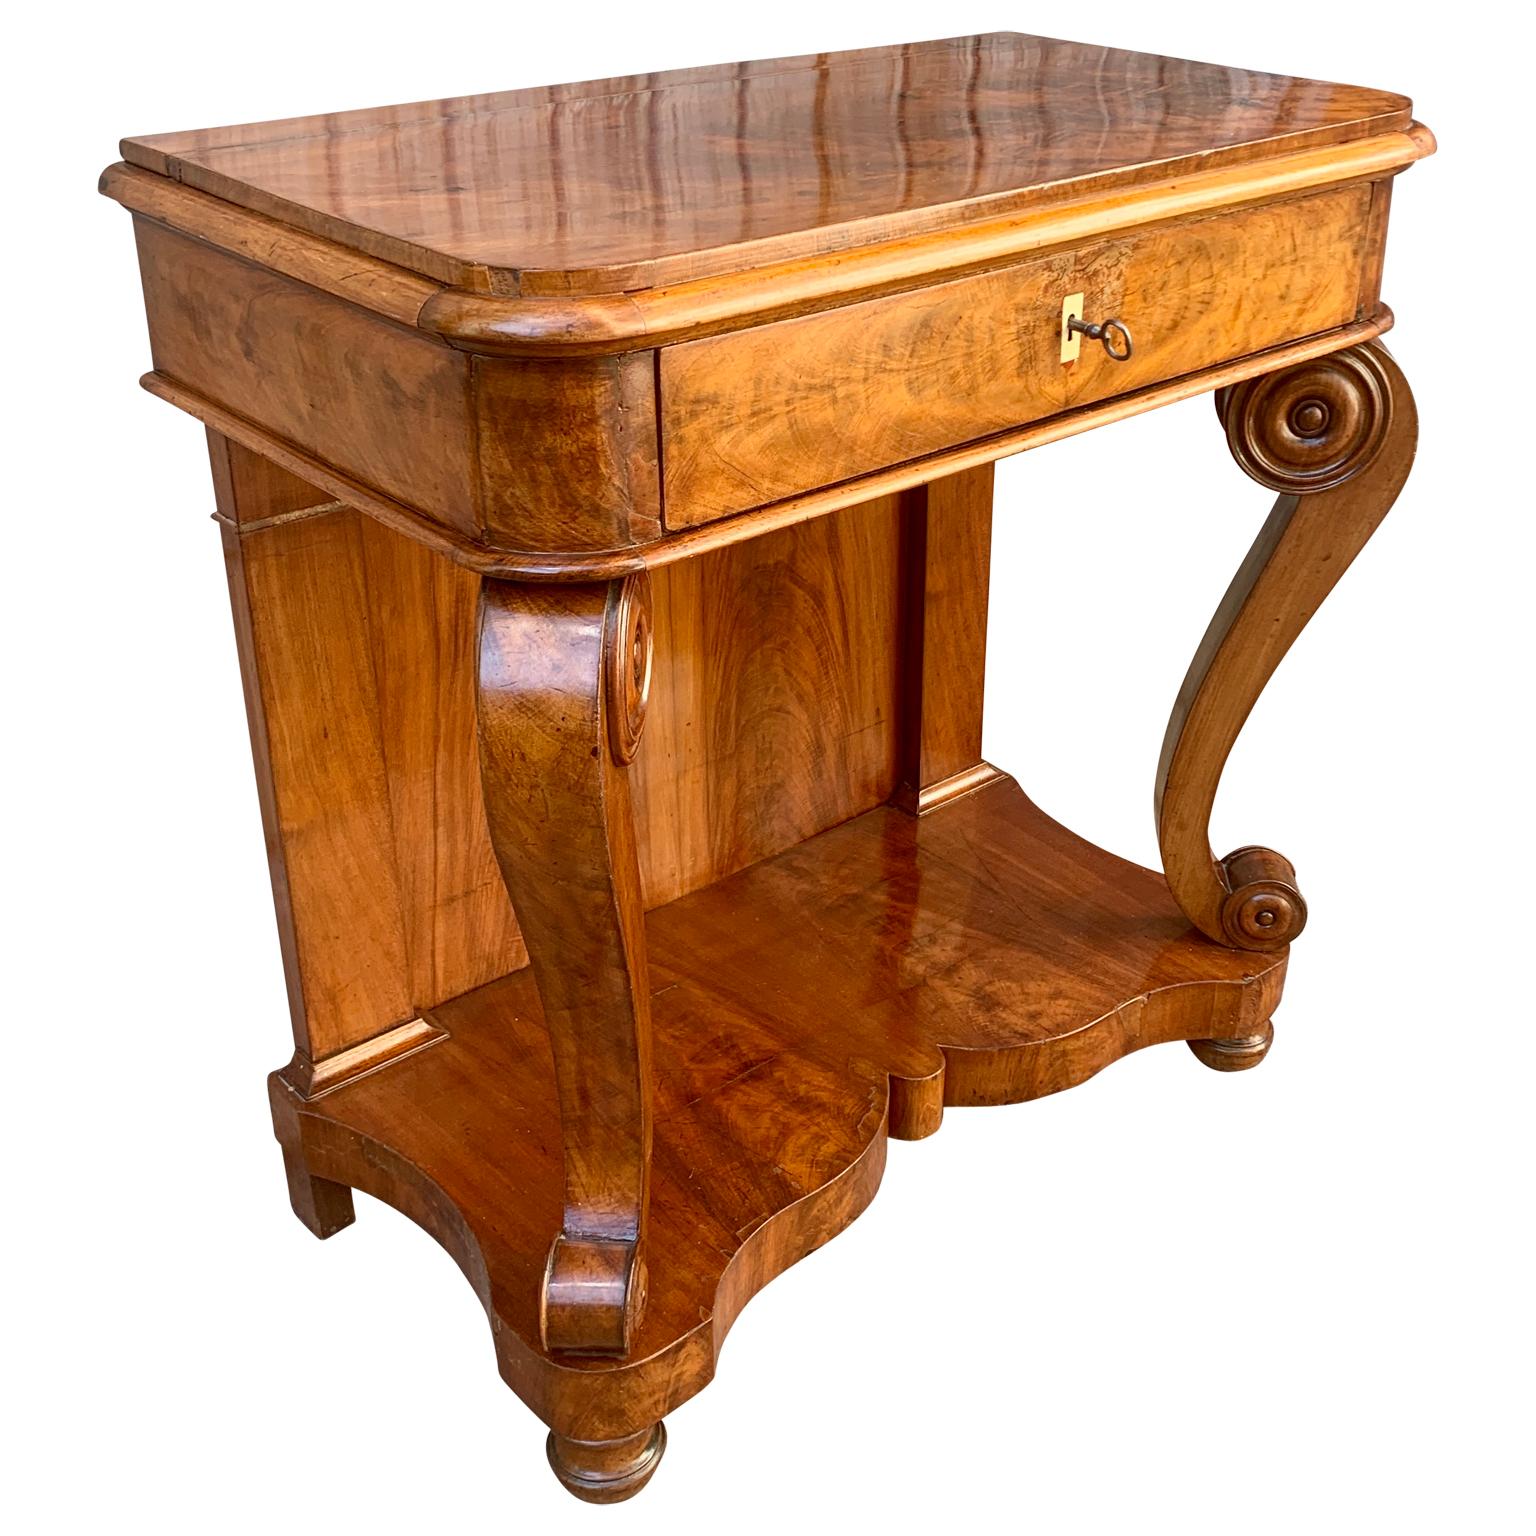 Table ou console Empire en acajou scandinave du début du XIXe siècle. Cet ancien meuble Biedermeier suédois possède un tiroir avec sa clé d'origine incluse et une étagère inférieure reposant sur des pieds arrondis. Il est probablement fabriqué dans